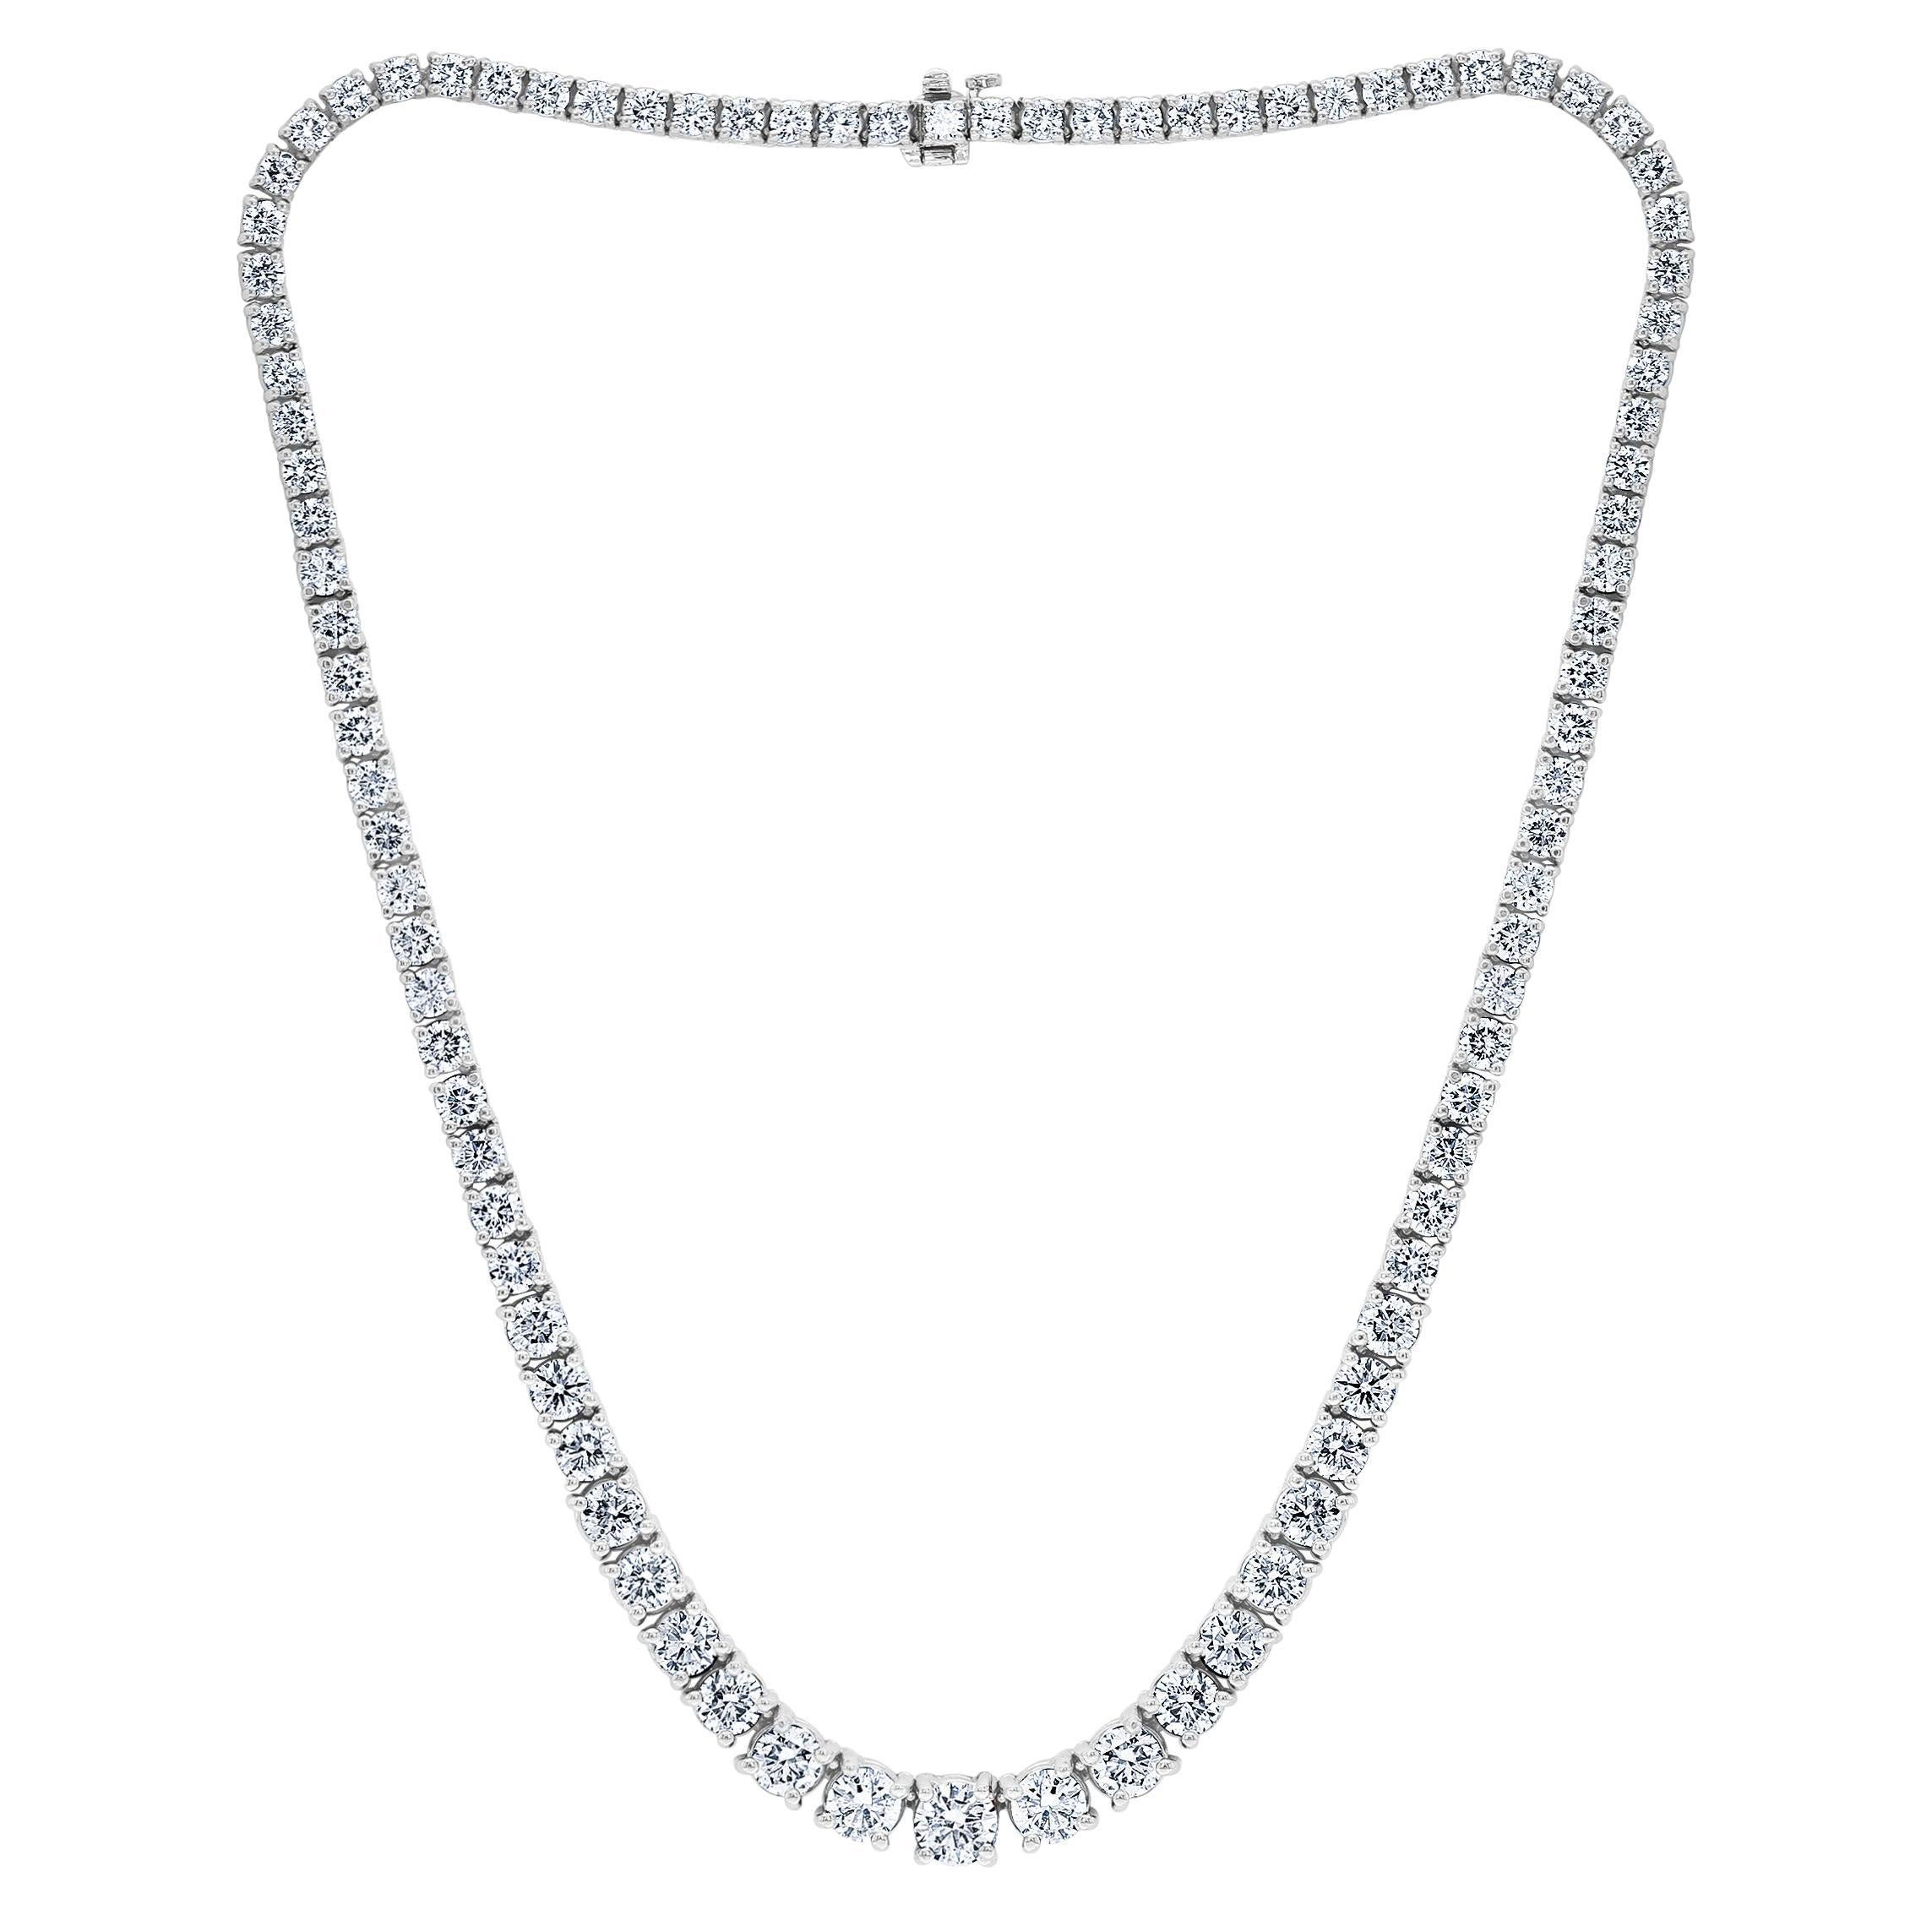 Abgestufte runde Diamant Riviera-Tennis-Halskette